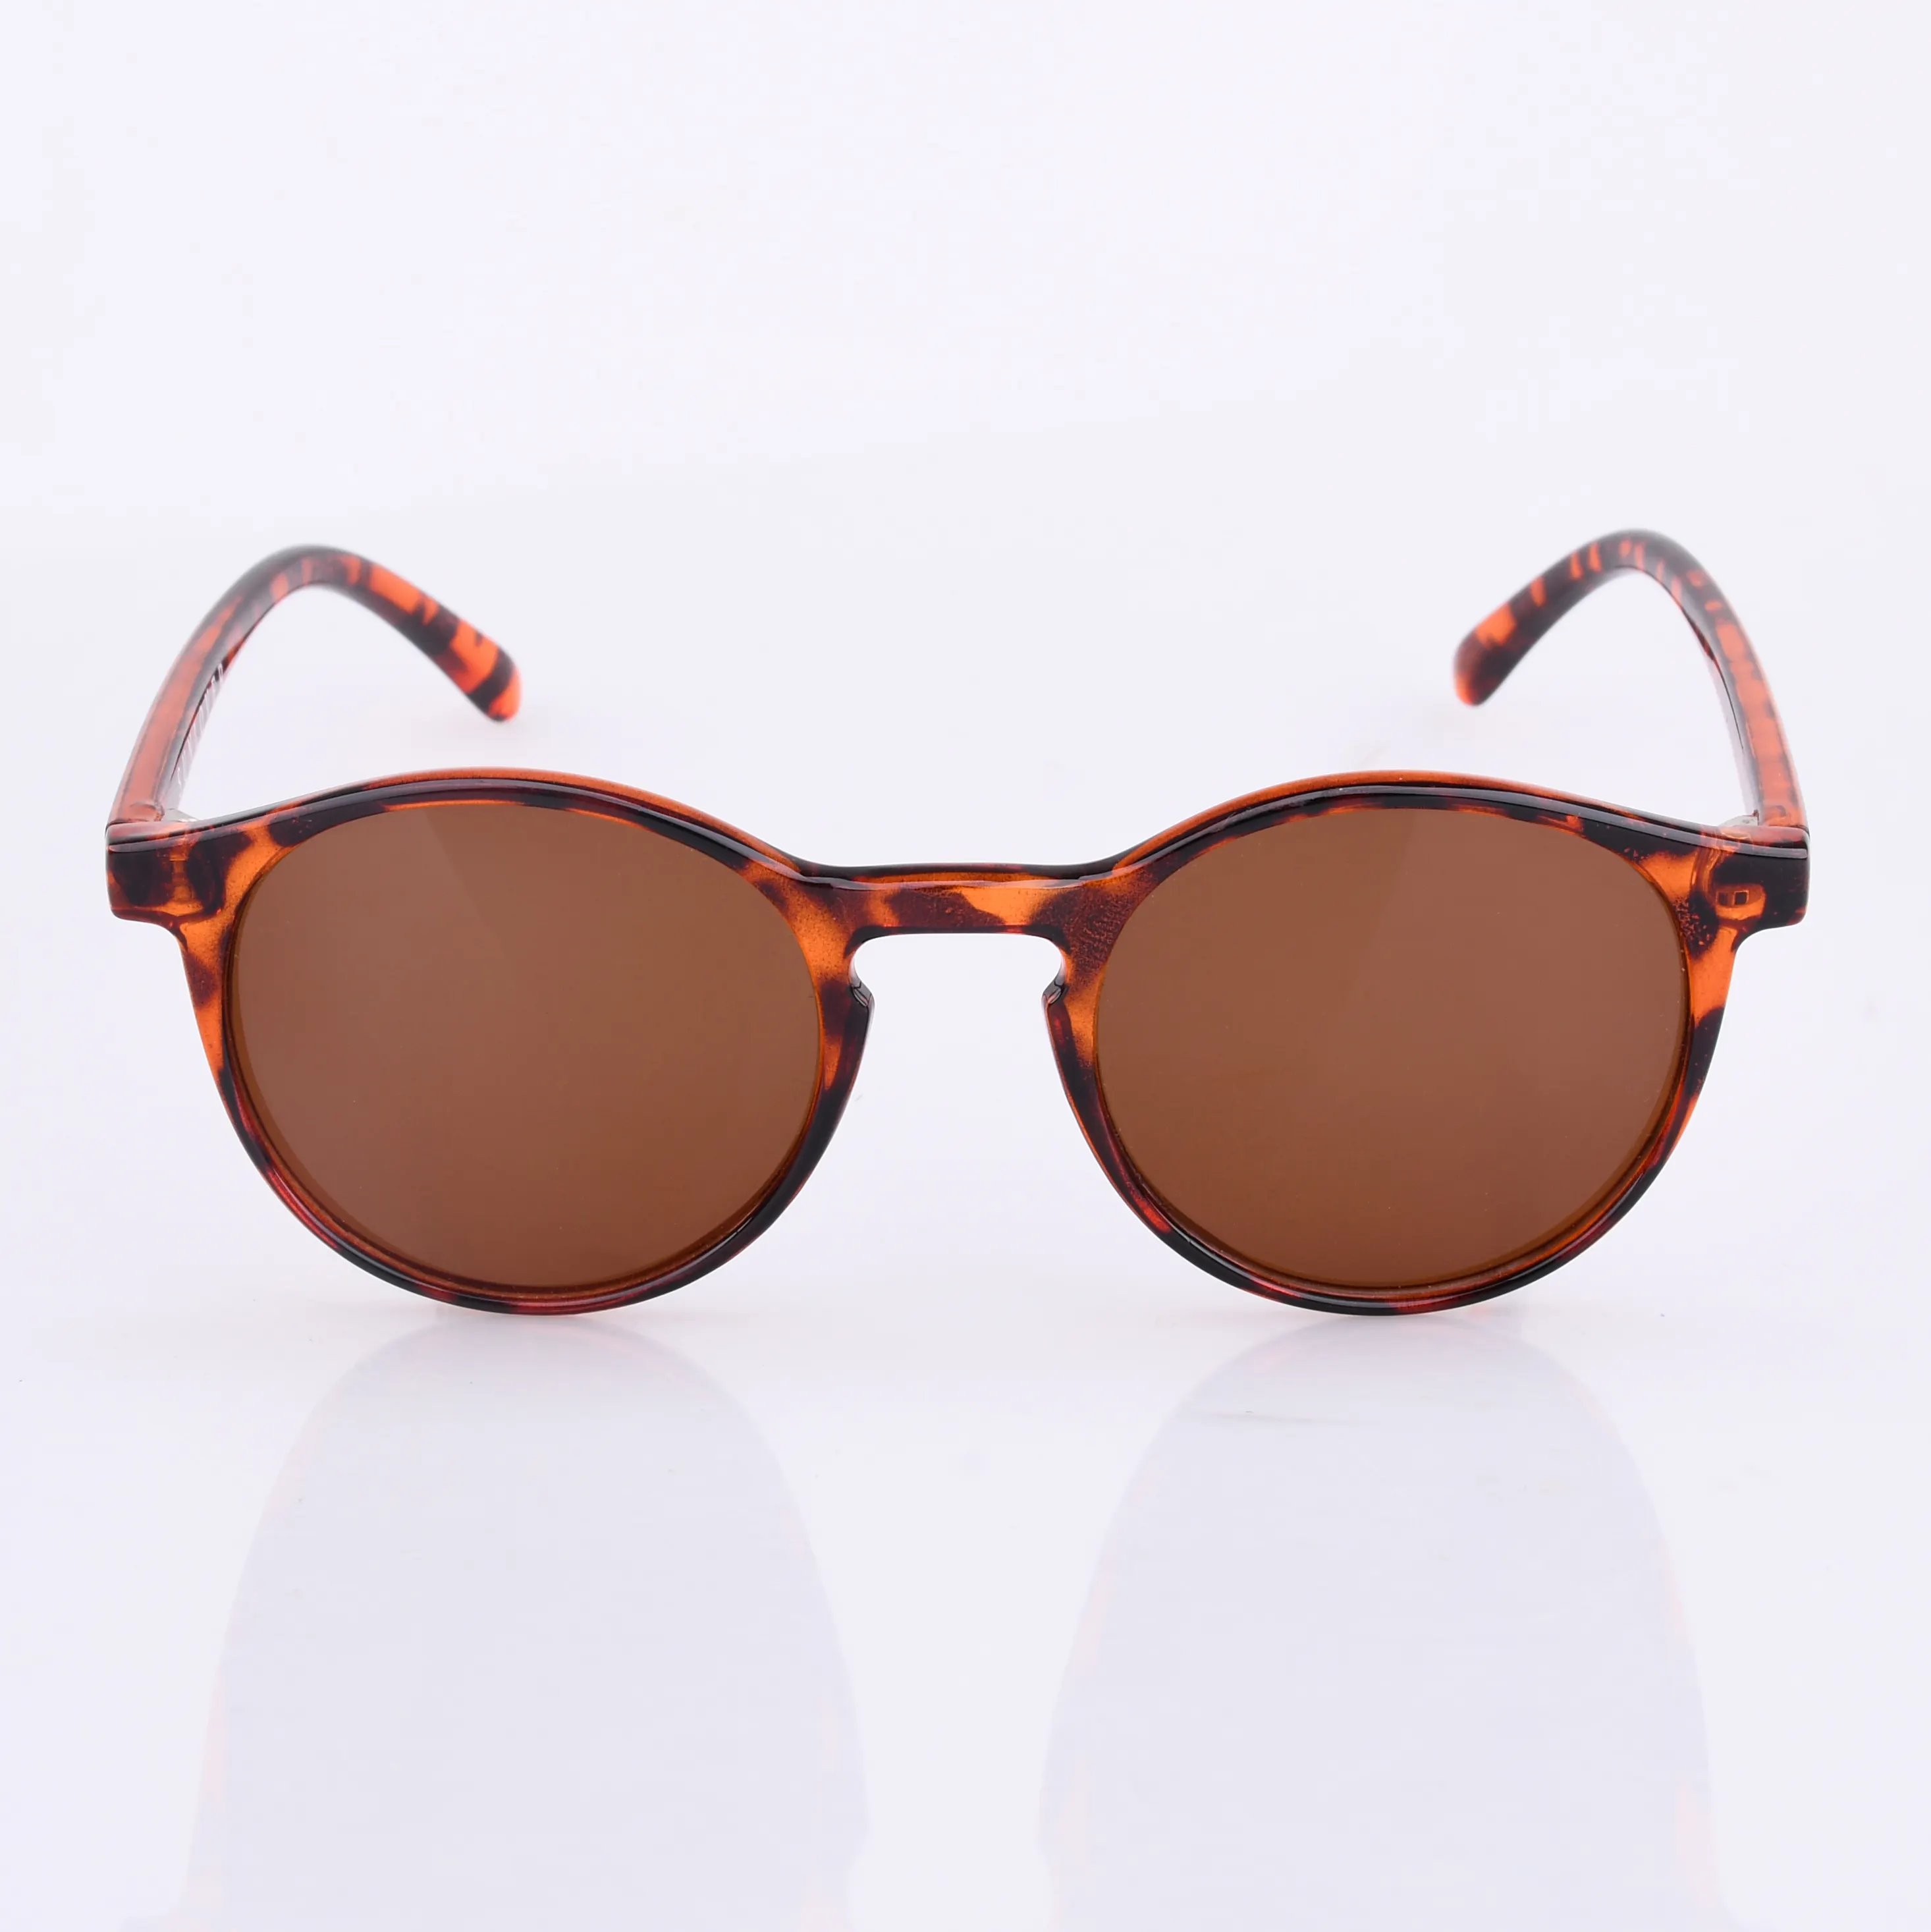 2010 klasik toptan yuvarlak tam çerçeve moda markalı güneş gözlüğü el yapımı özel moda güneş gözlüğü 2020